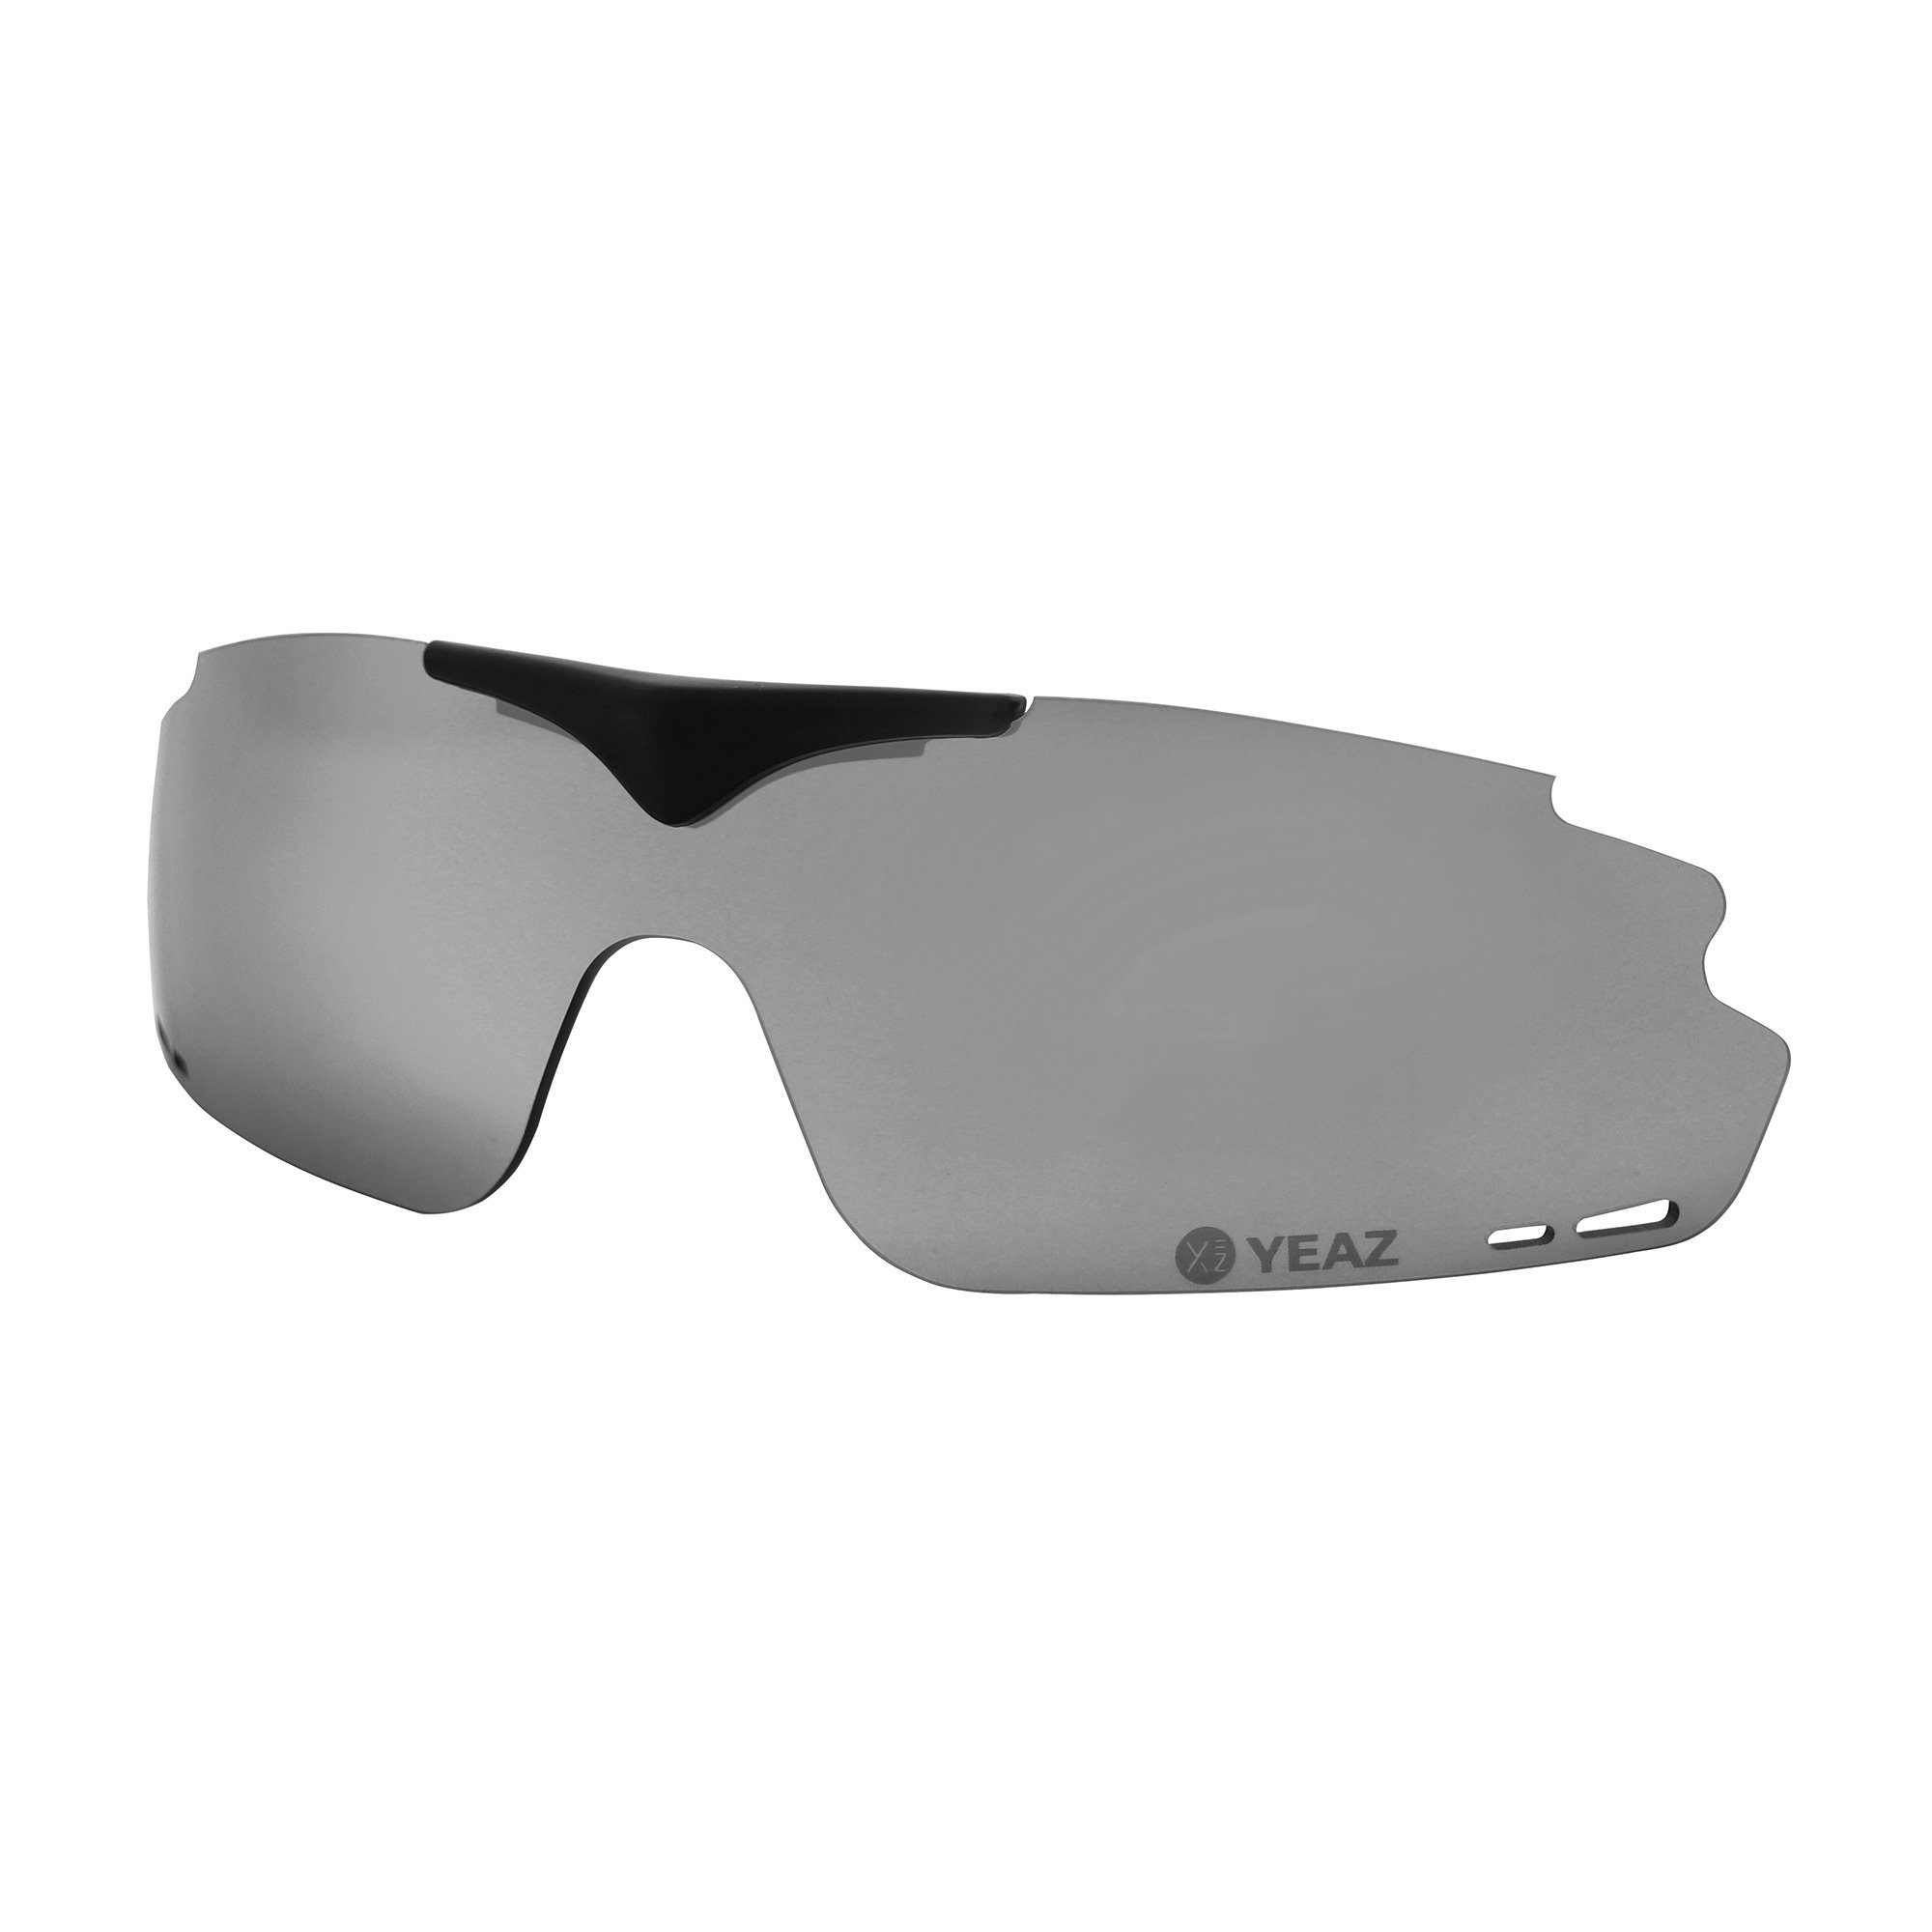 SUNUP magnetisches Magnetisches Sportbrille SUNUP Wechselglas für wechselglas grey, YEAZ